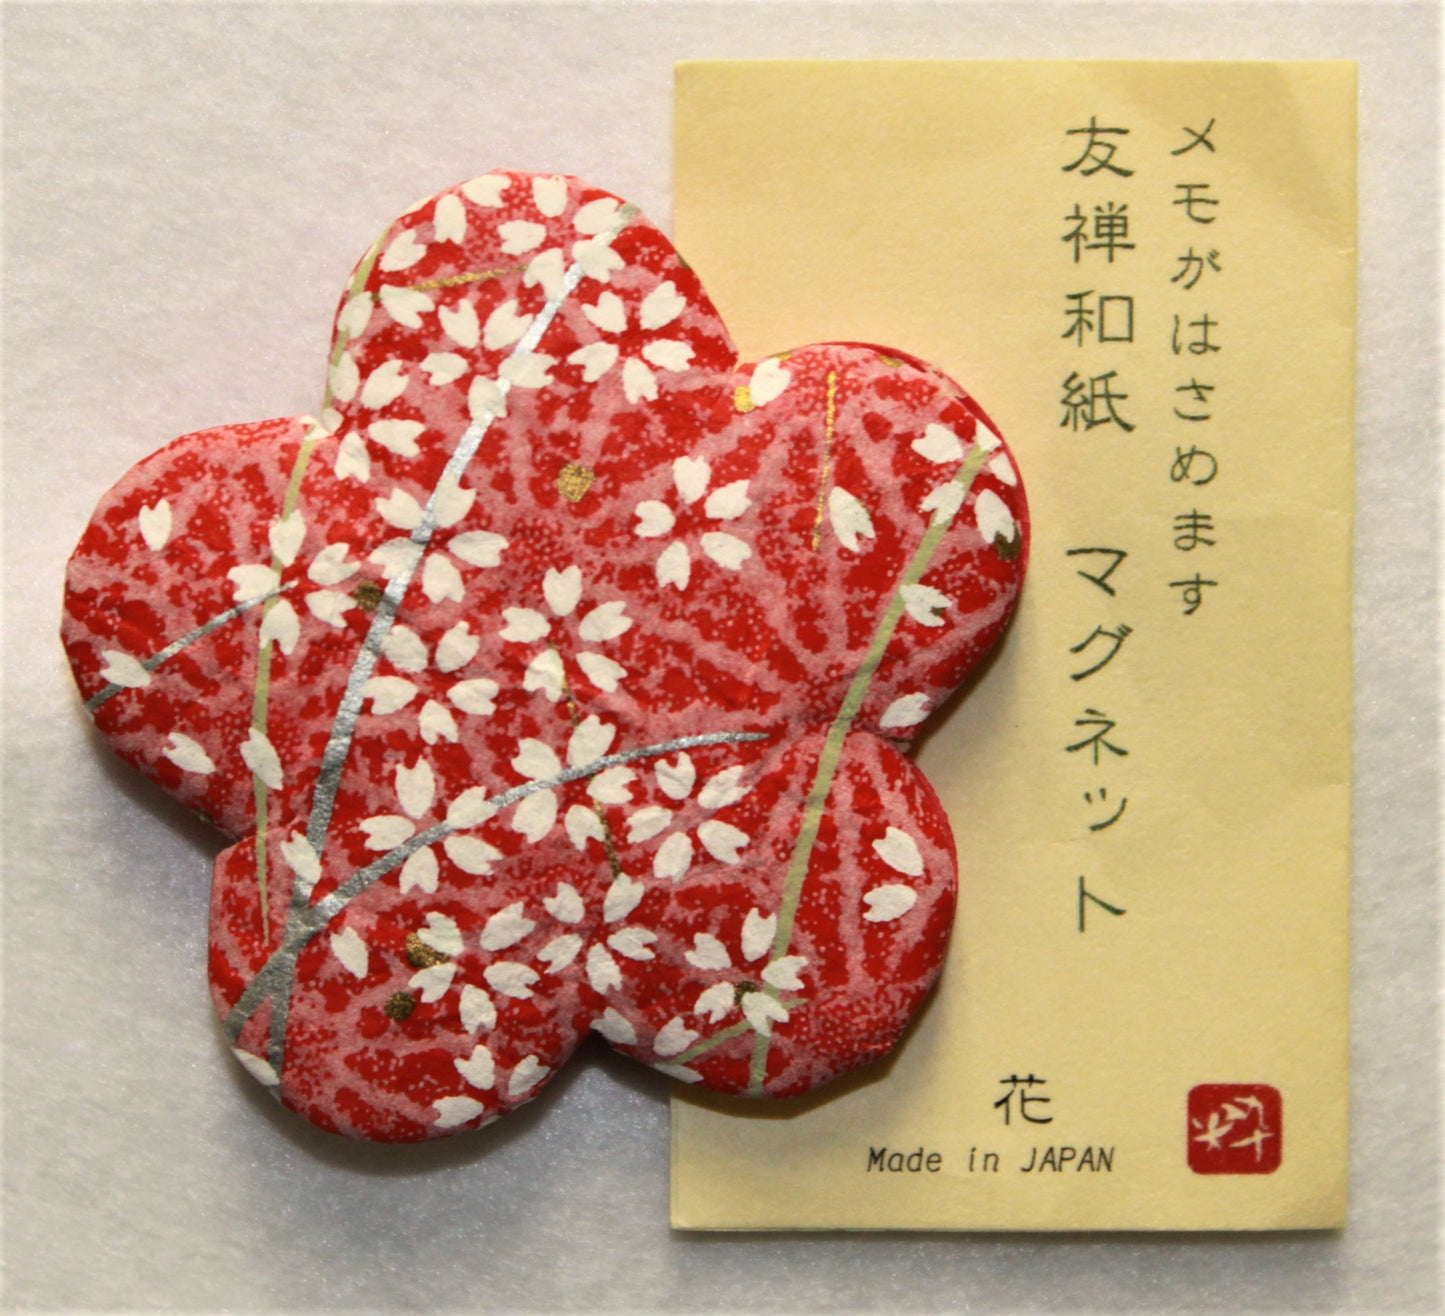 "MINOWASHI" Magnets 10 pcs. set - JAPANESE GIFTS 